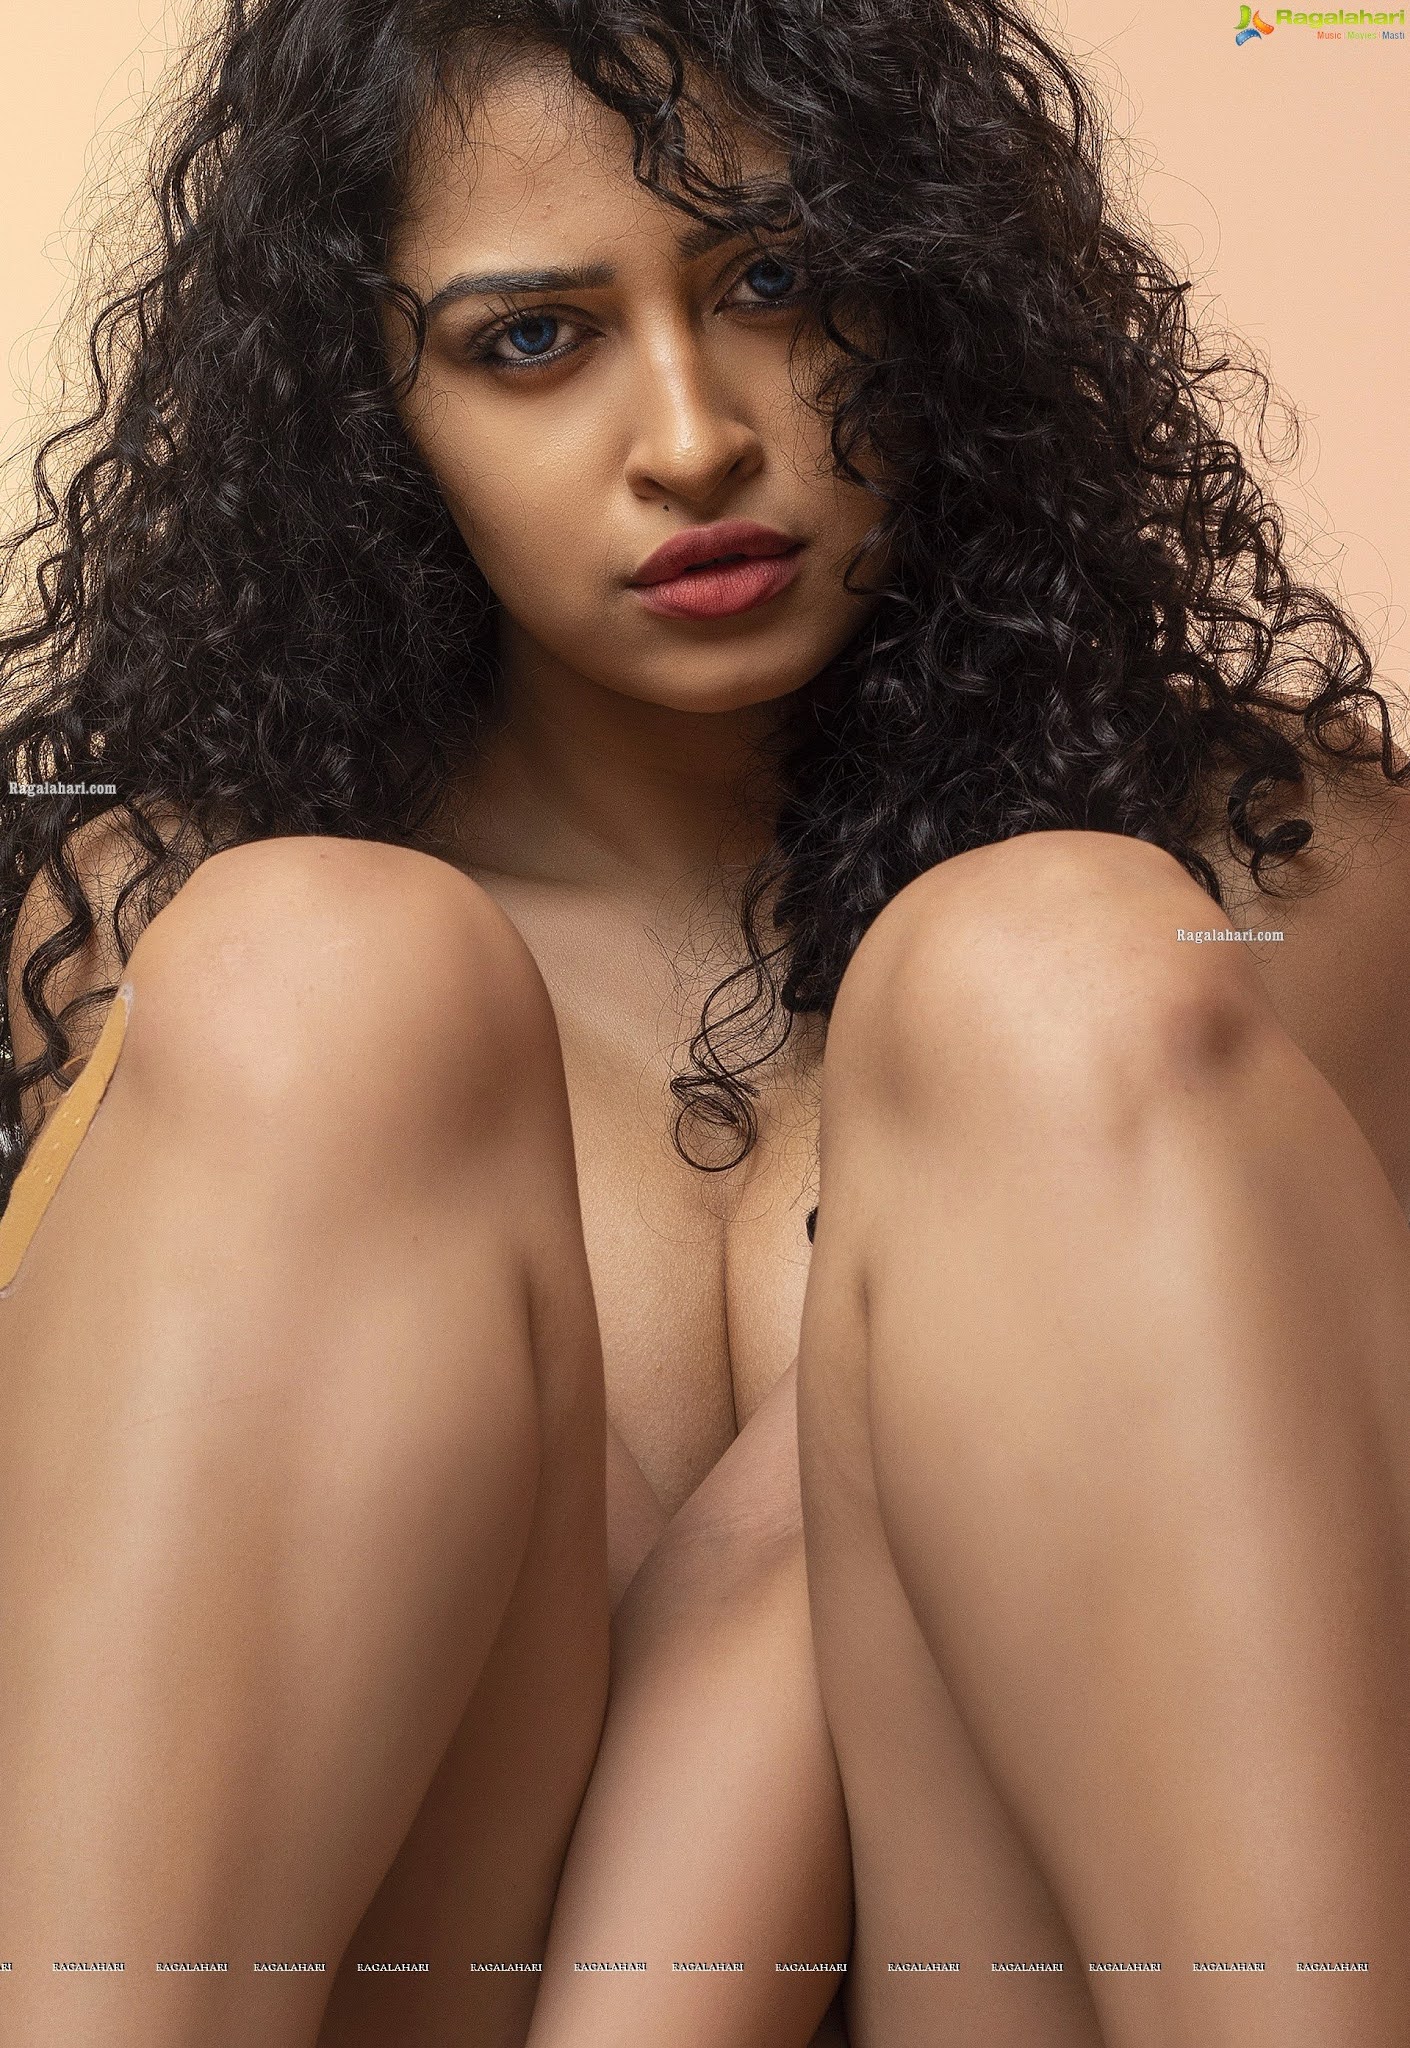 RGV's Dangerous Actress Apsara Rani Hot Photos